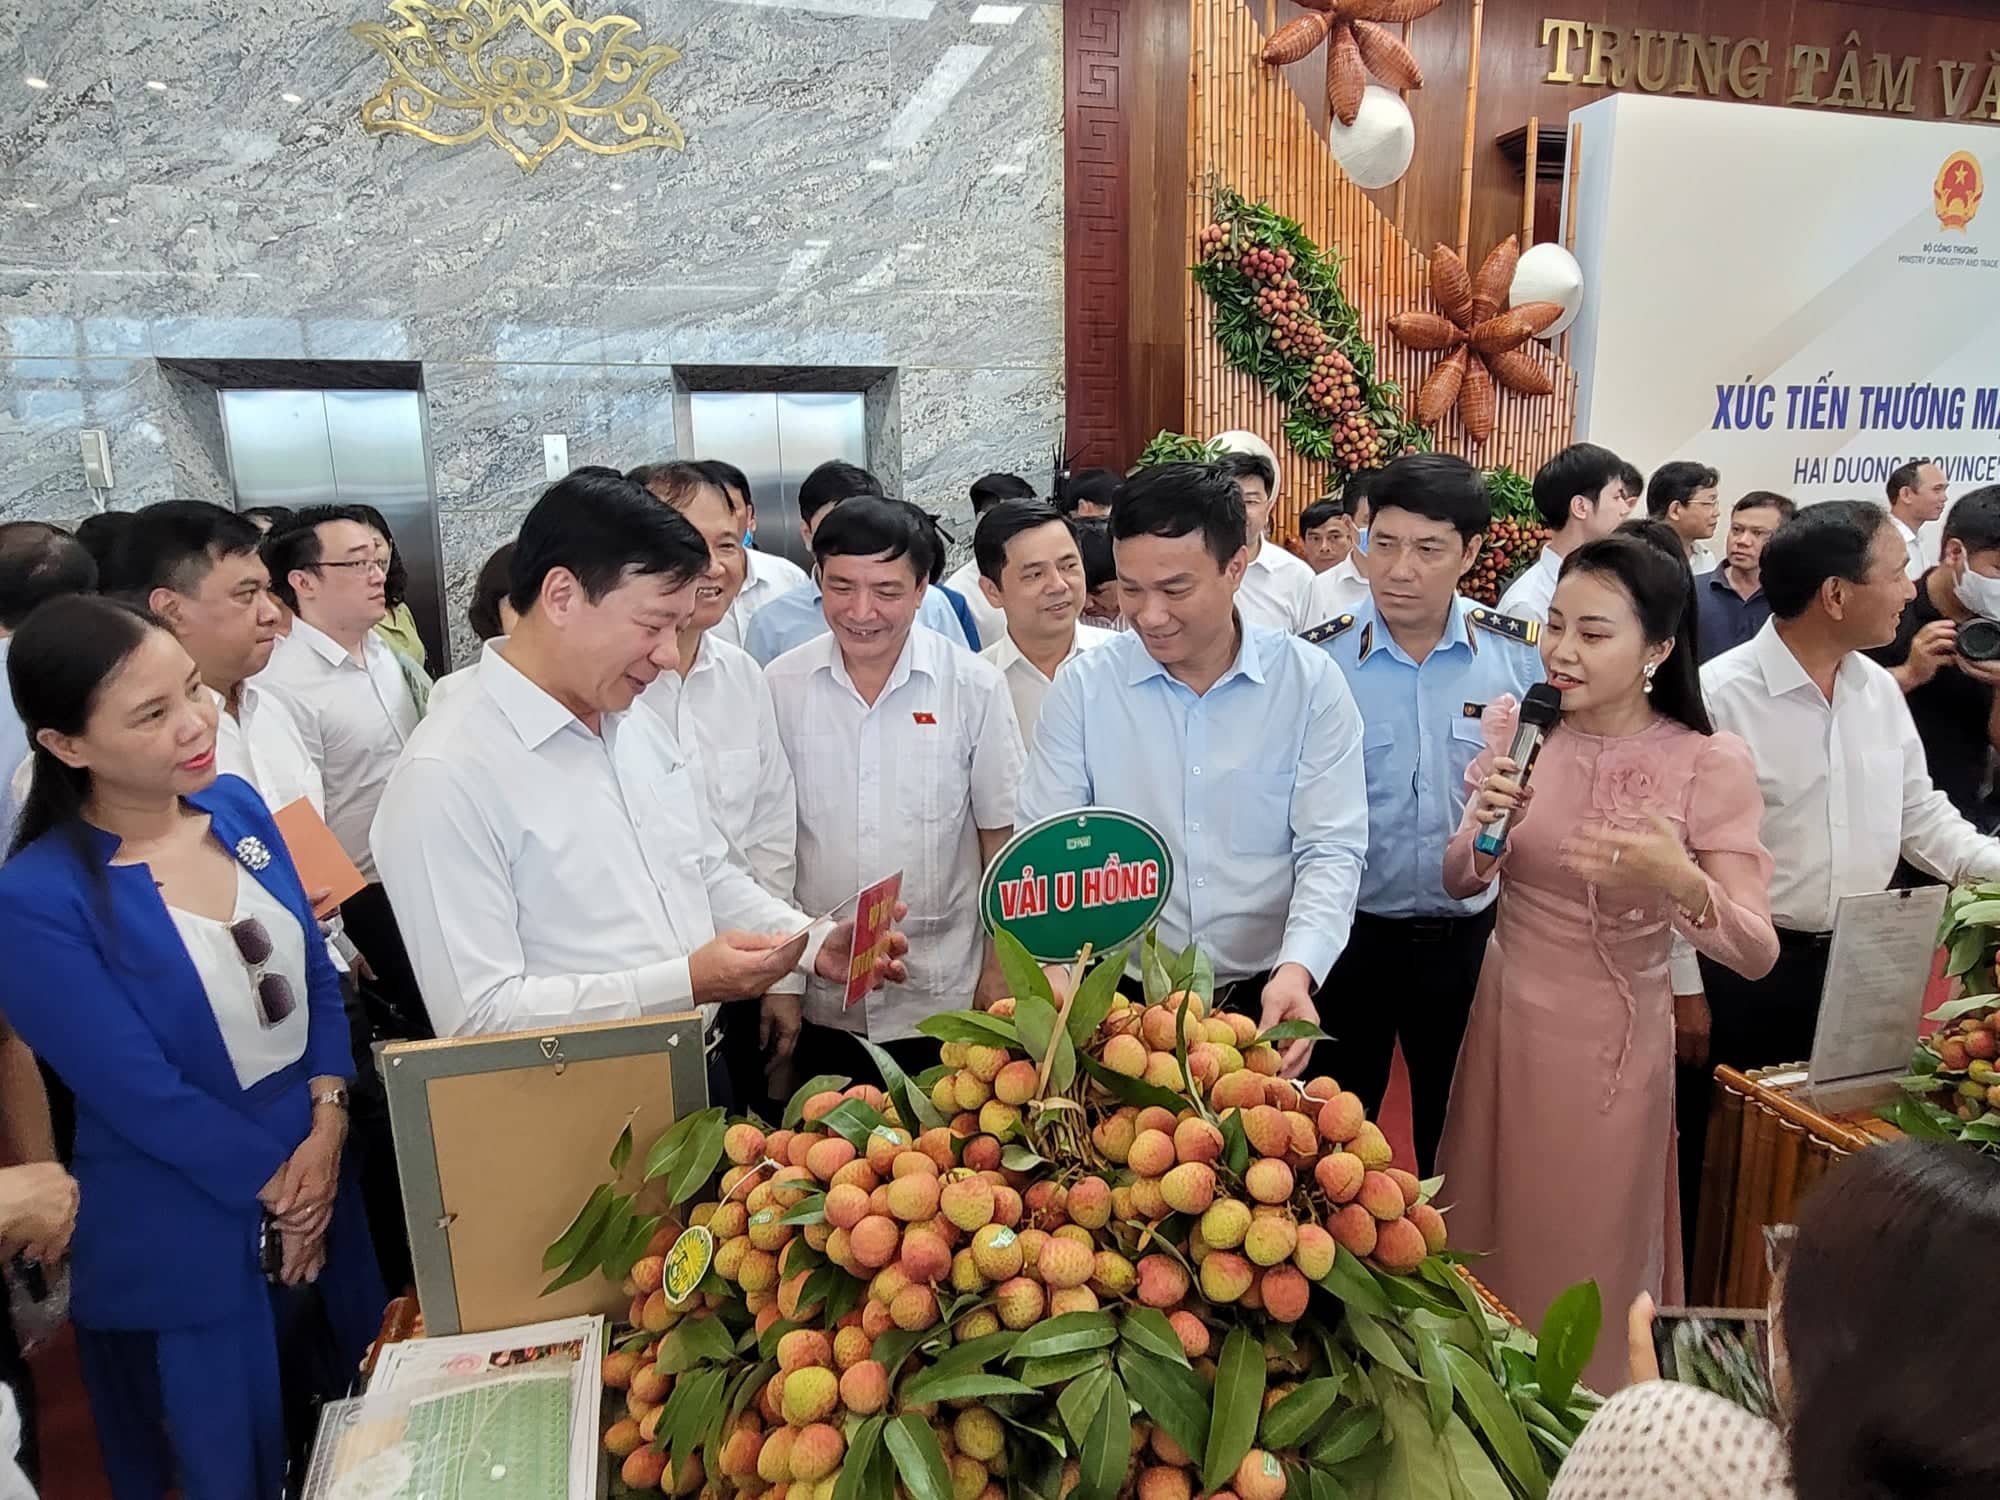 Các đại biểu tham quan khu vực trưng bày sản phẩm tiêu biểu của Hải Dương trong khuôn viên Trung tâm Văn hóa xứ Đông. Ảnh: Thanh Sơn